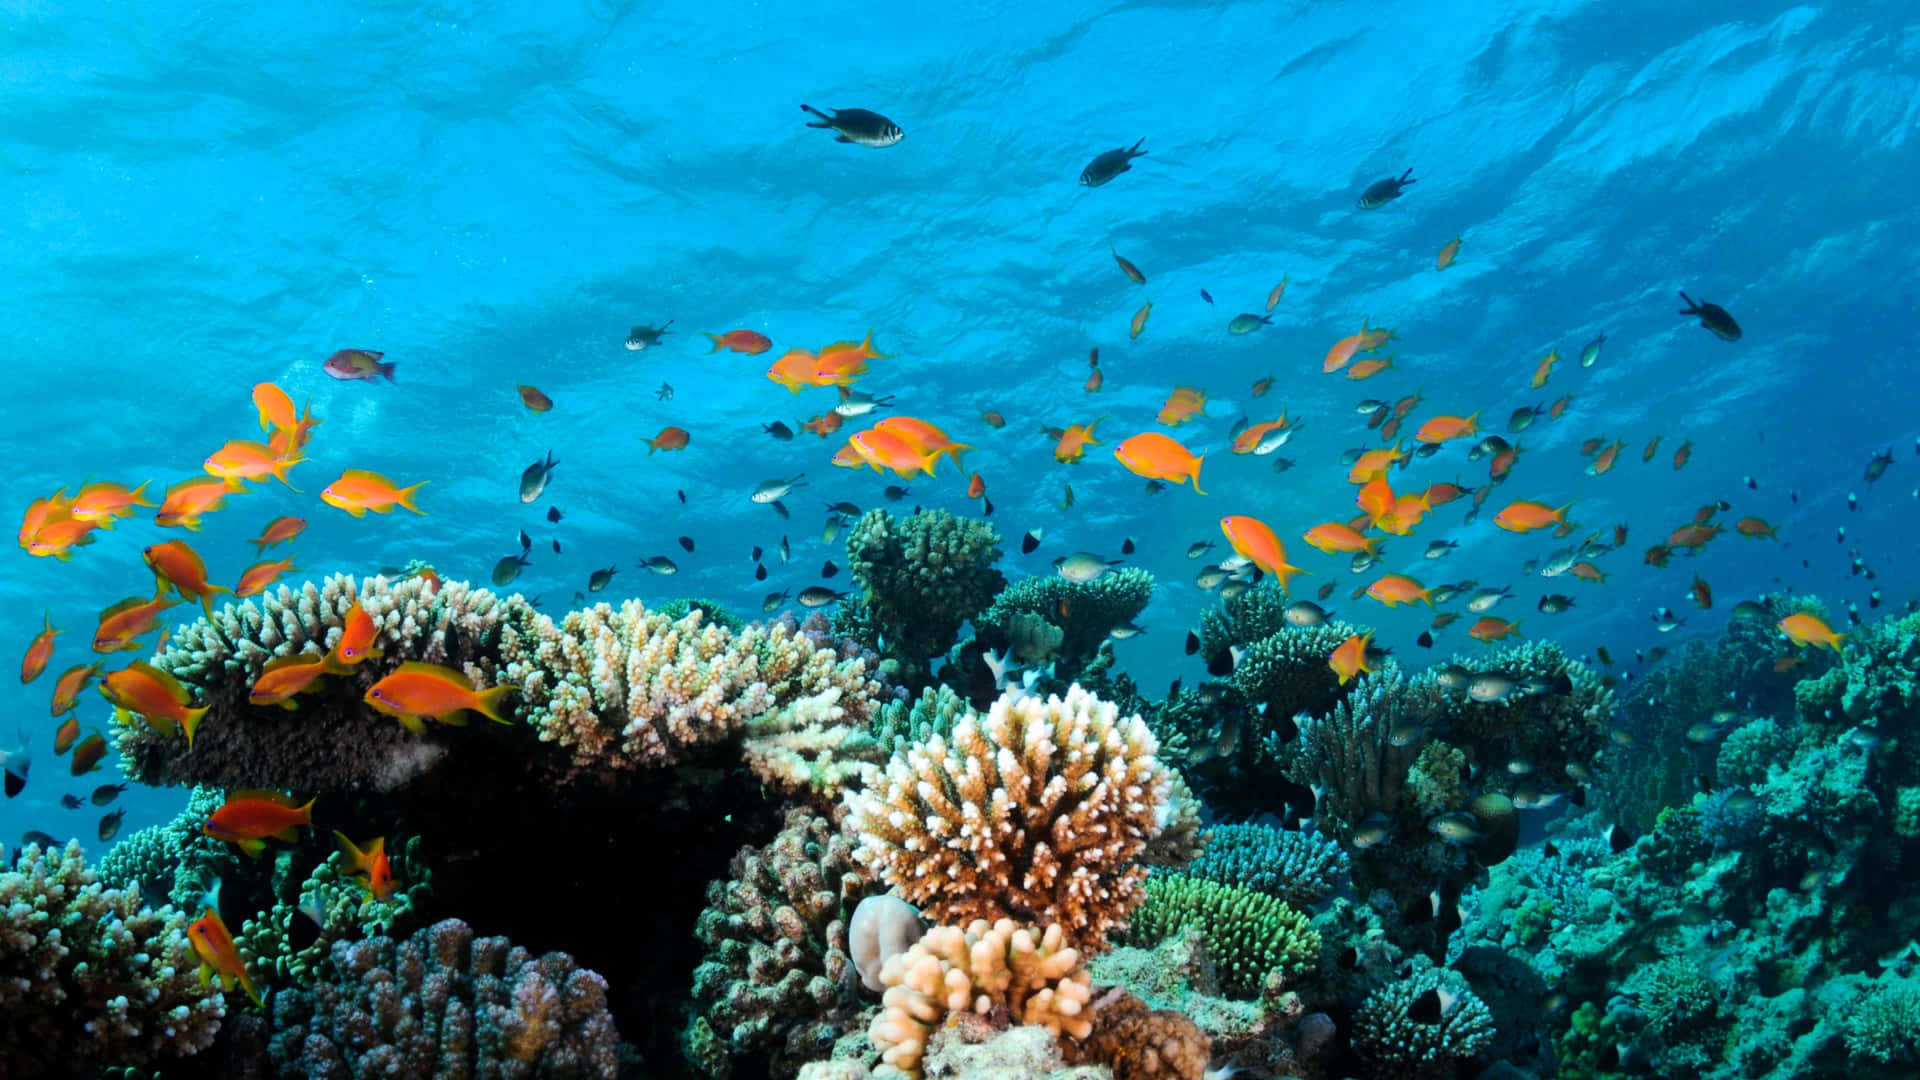 Unarrecife De Coral Con Muchos Peces Nadando Alrededor Fondo de pantalla